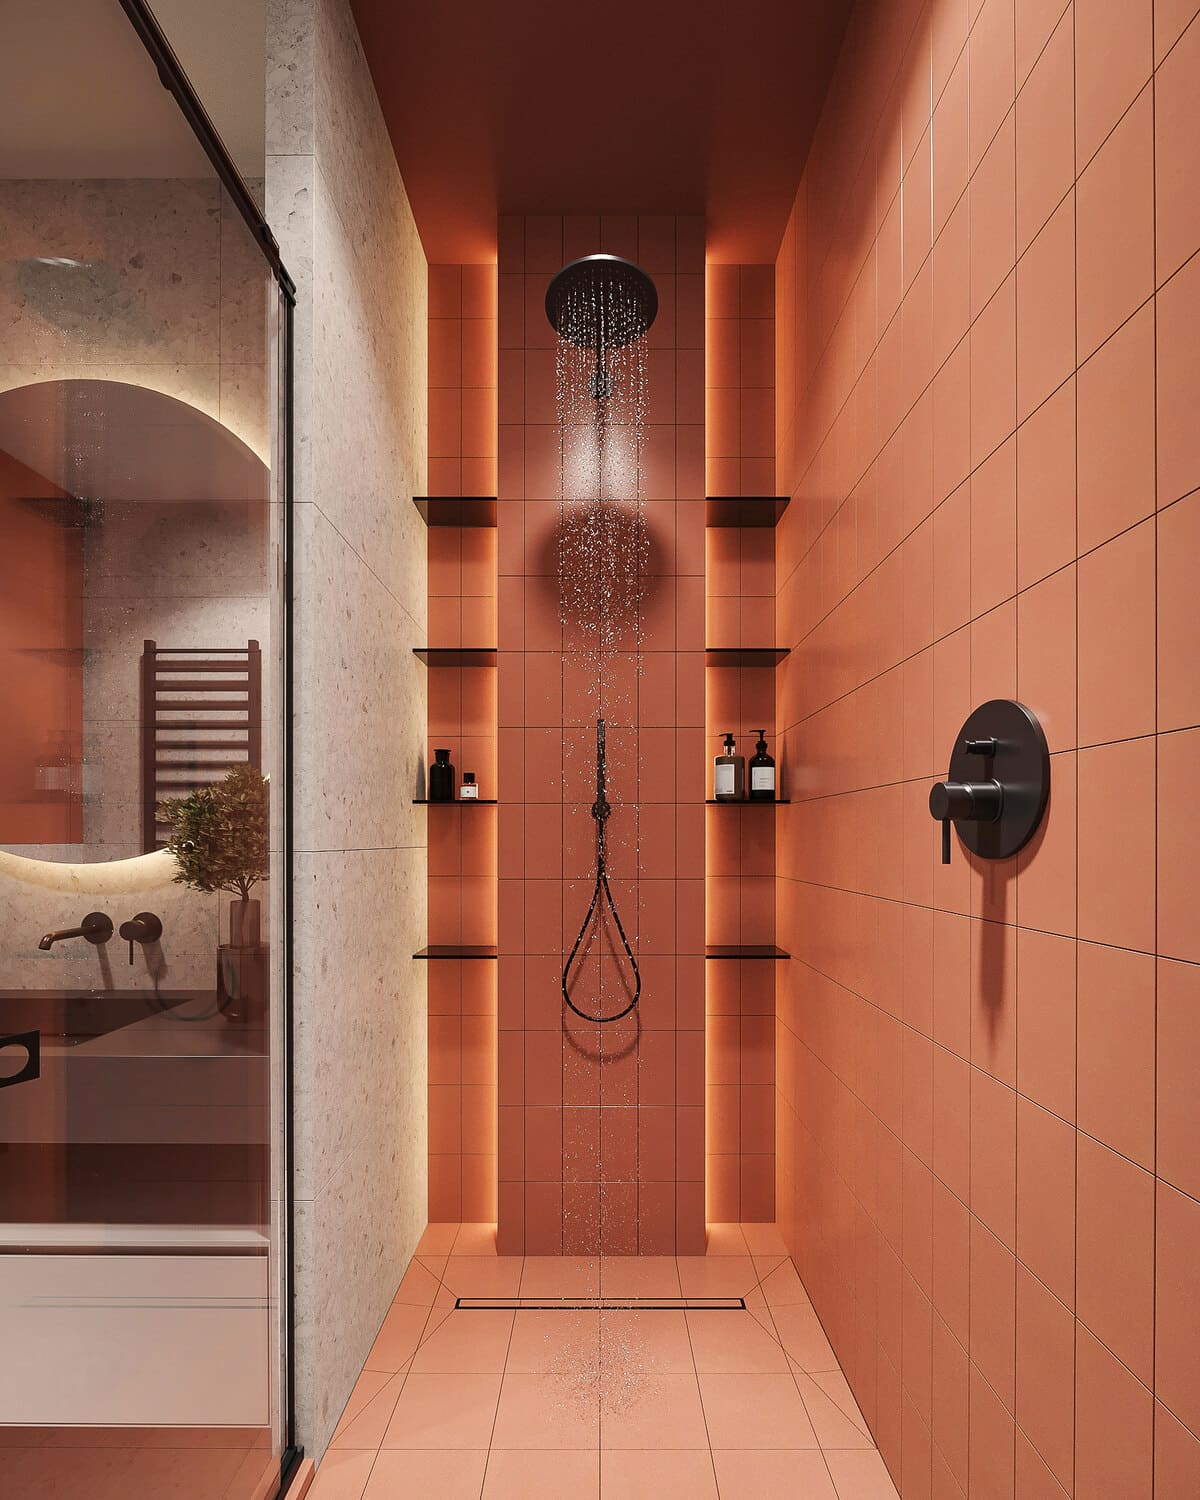 Минималистичная квартира с контрастными акцентами в стиле минимализма, ванная, фото 5